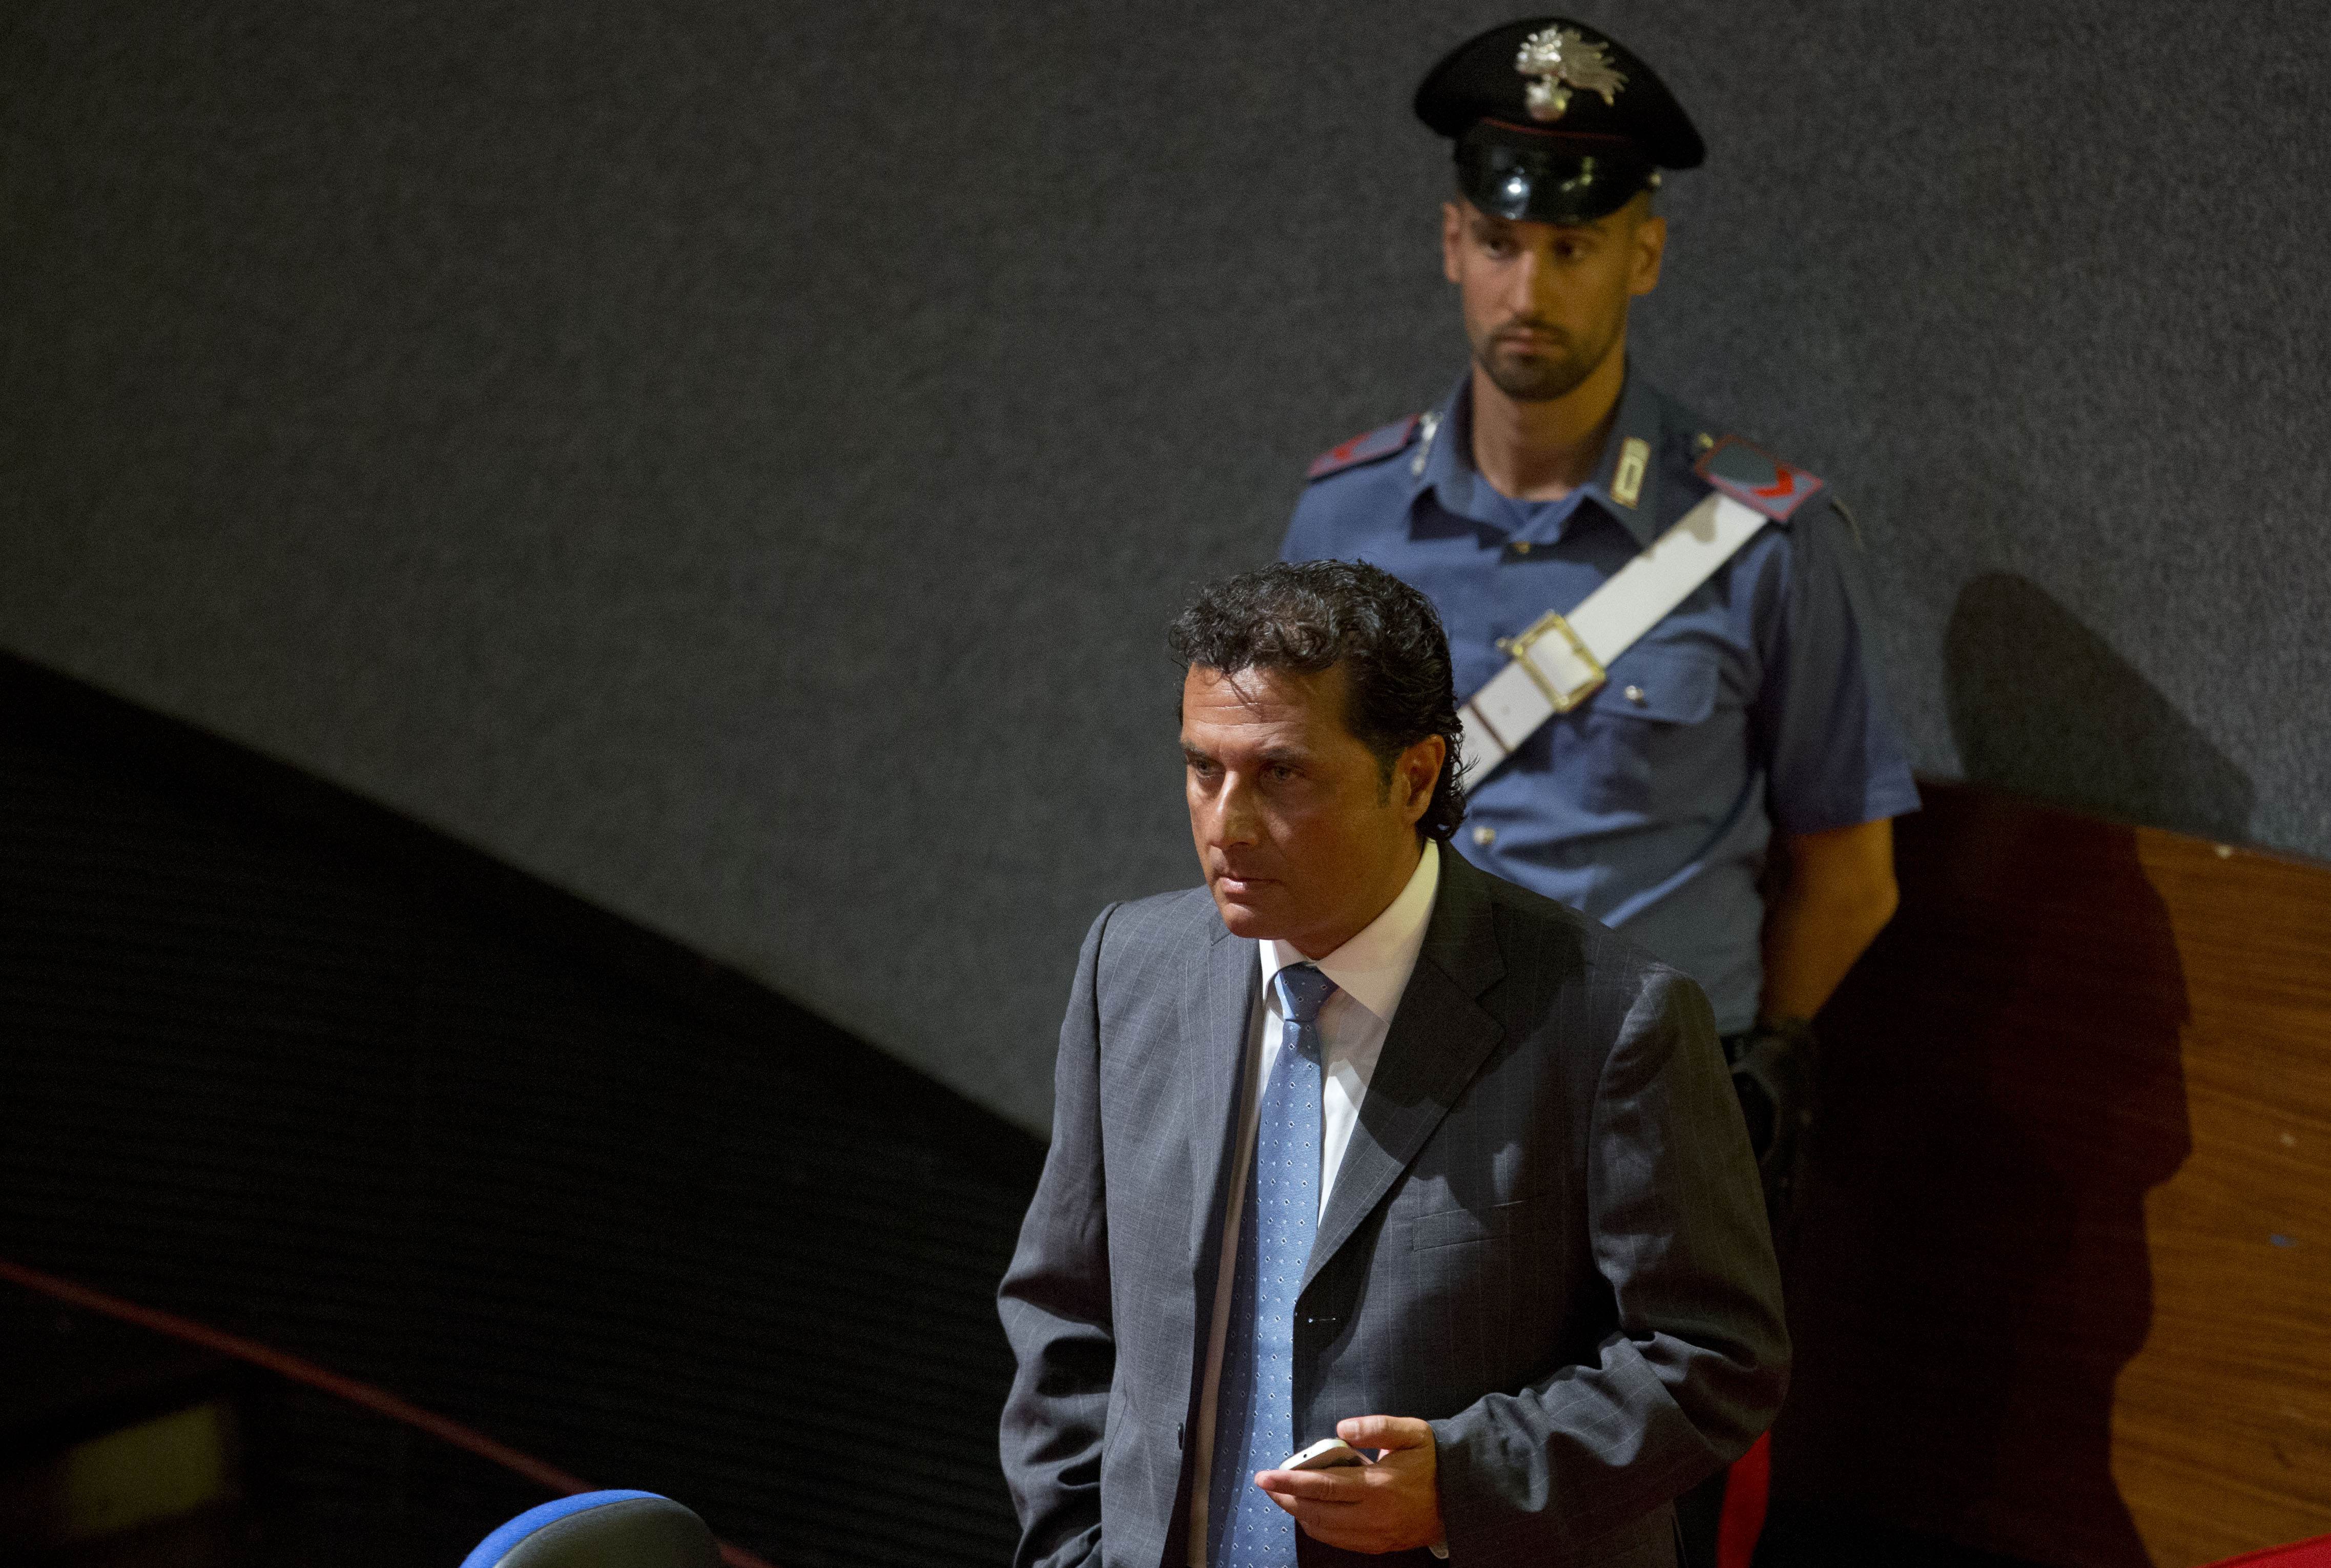 Ξεκίνησε η η δίκη του καπετάνιου του κρουαζιερόπλοιου Costa Concordia